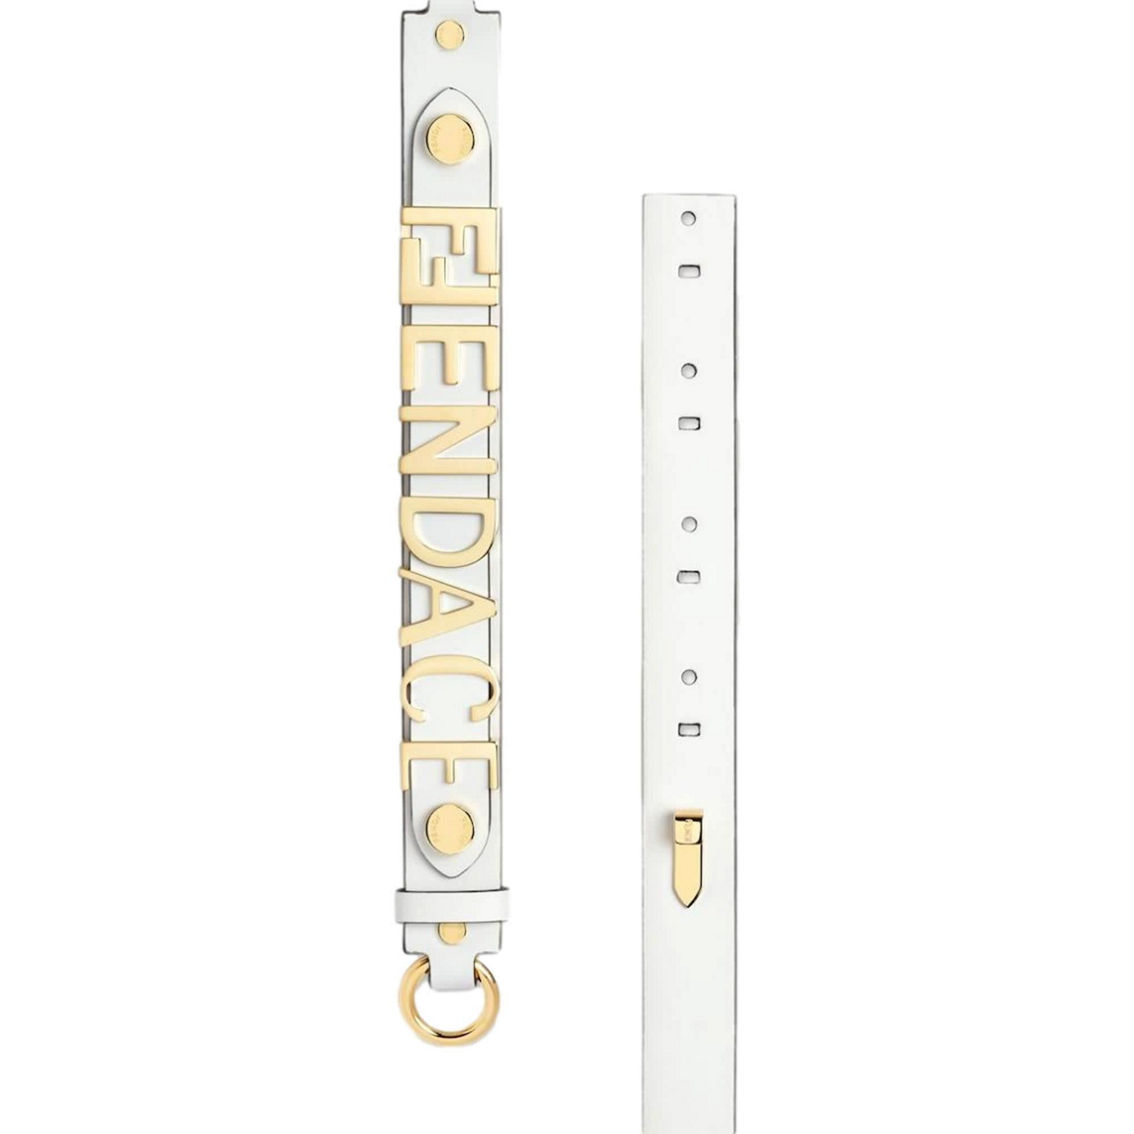 Fendi Fendace Gold Logo Ivory Leather Belt Size 85 (New) - Image 3 of 3